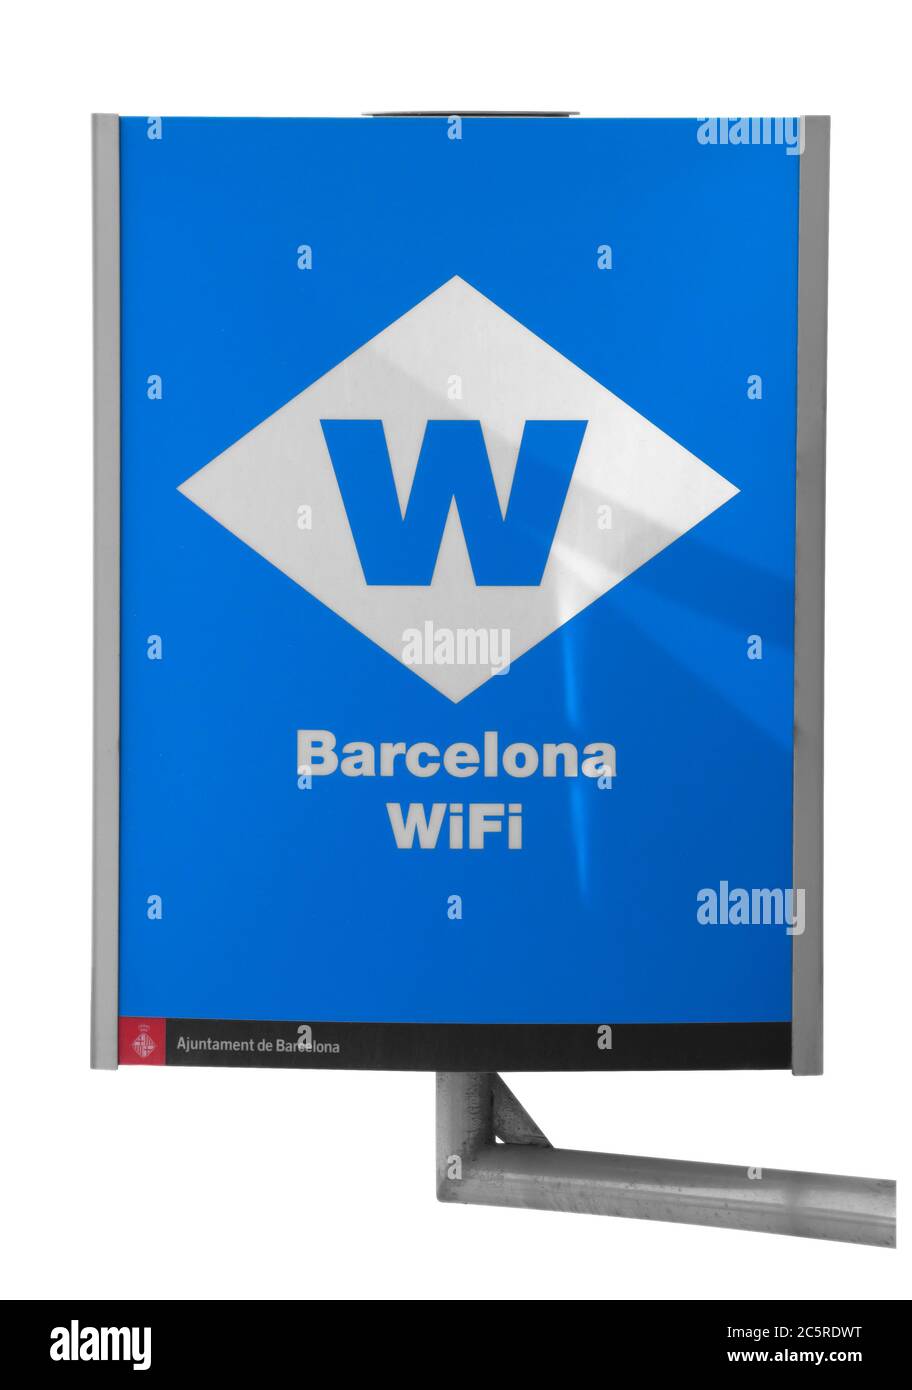 Borne wifi Banque d'images détourées - Alamy